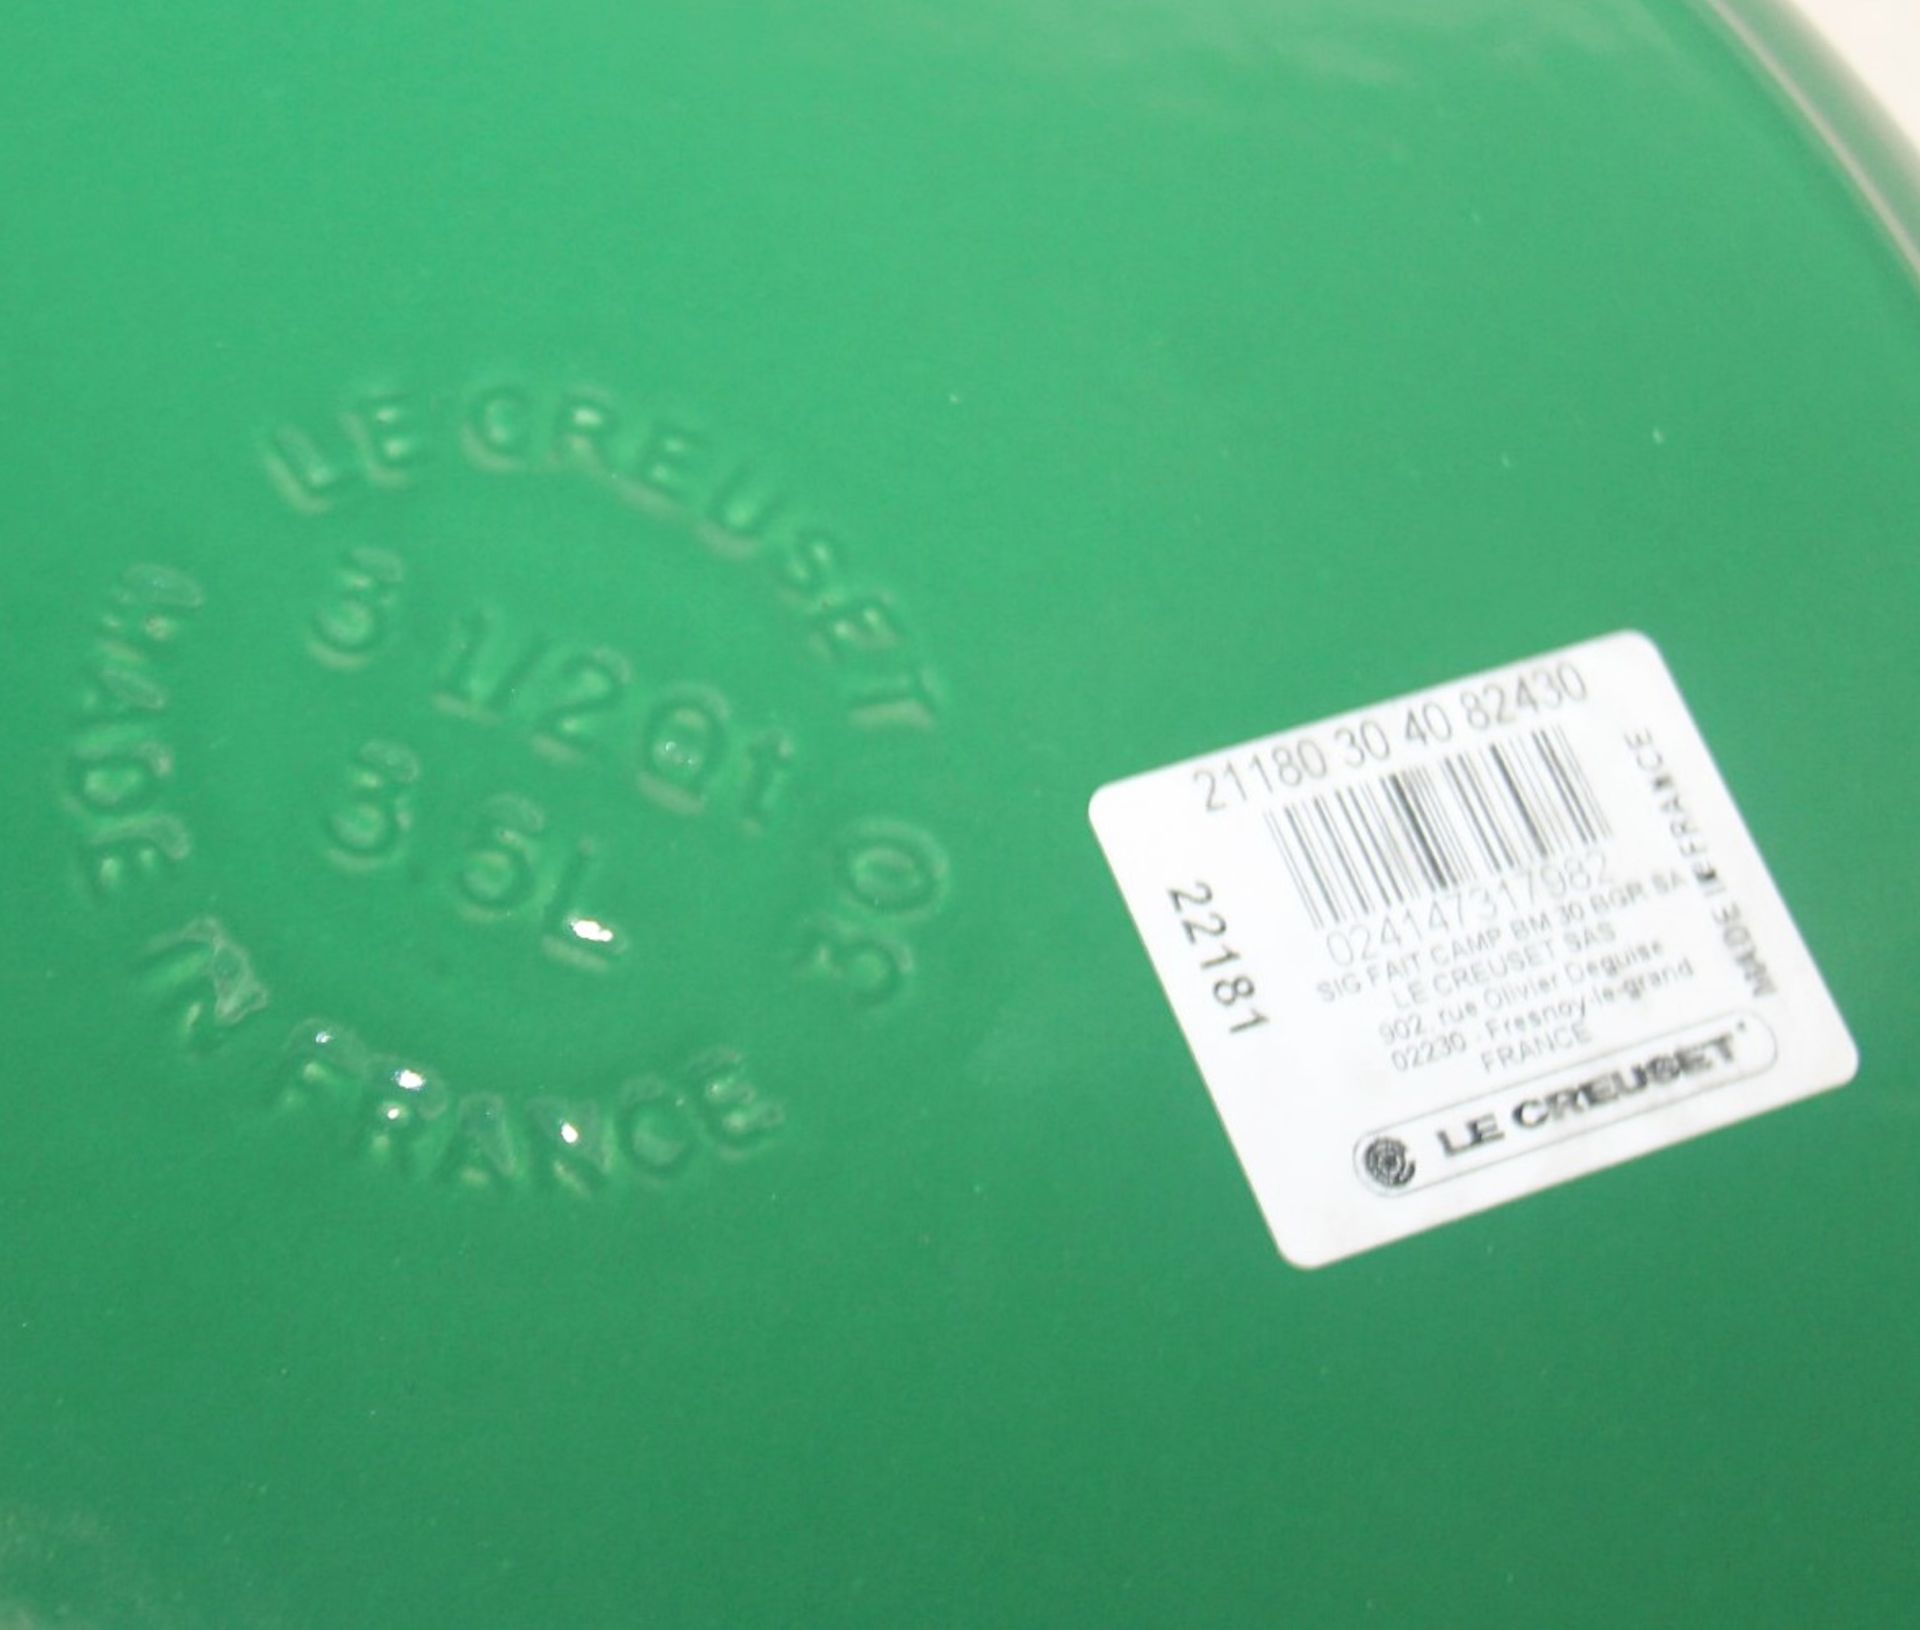 1 x LE CREUSET LE 'Signature' Enamelled Cast Iron Shallow Casserole Dish (30cm) - RRP £270.00 - Image 8 of 12